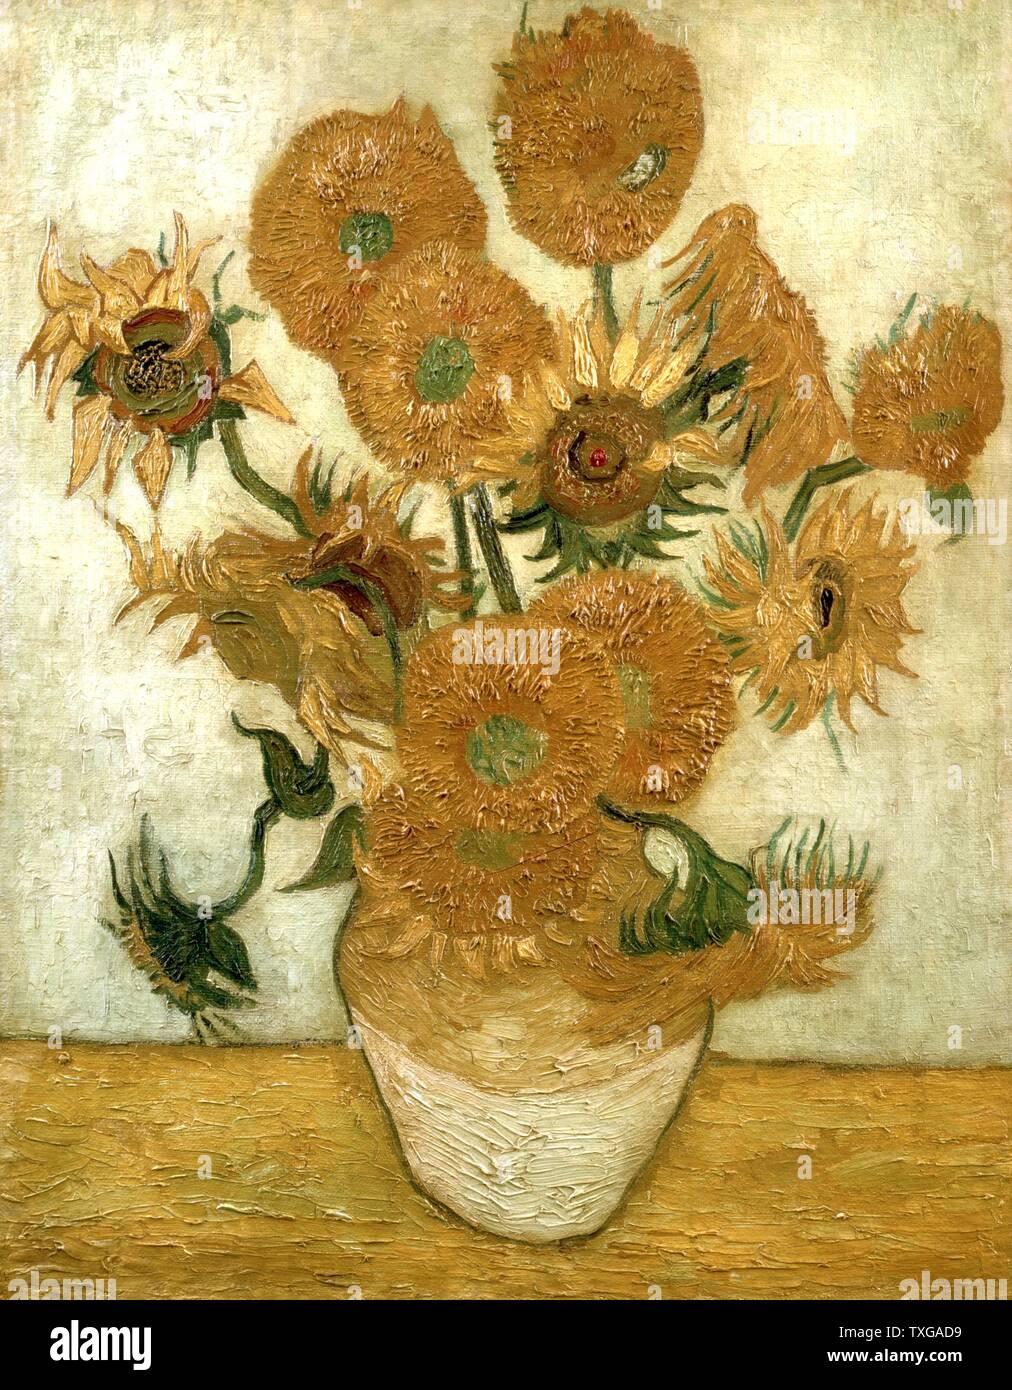 Vincent van Gogh scuola olandese vaso con quindici girasoli (le ripetizioni) Gennaio 1889 olio su tela (100,5 x 76,5 cm) Tokyo, Sompo Nipponkoa Museum Foto Stock